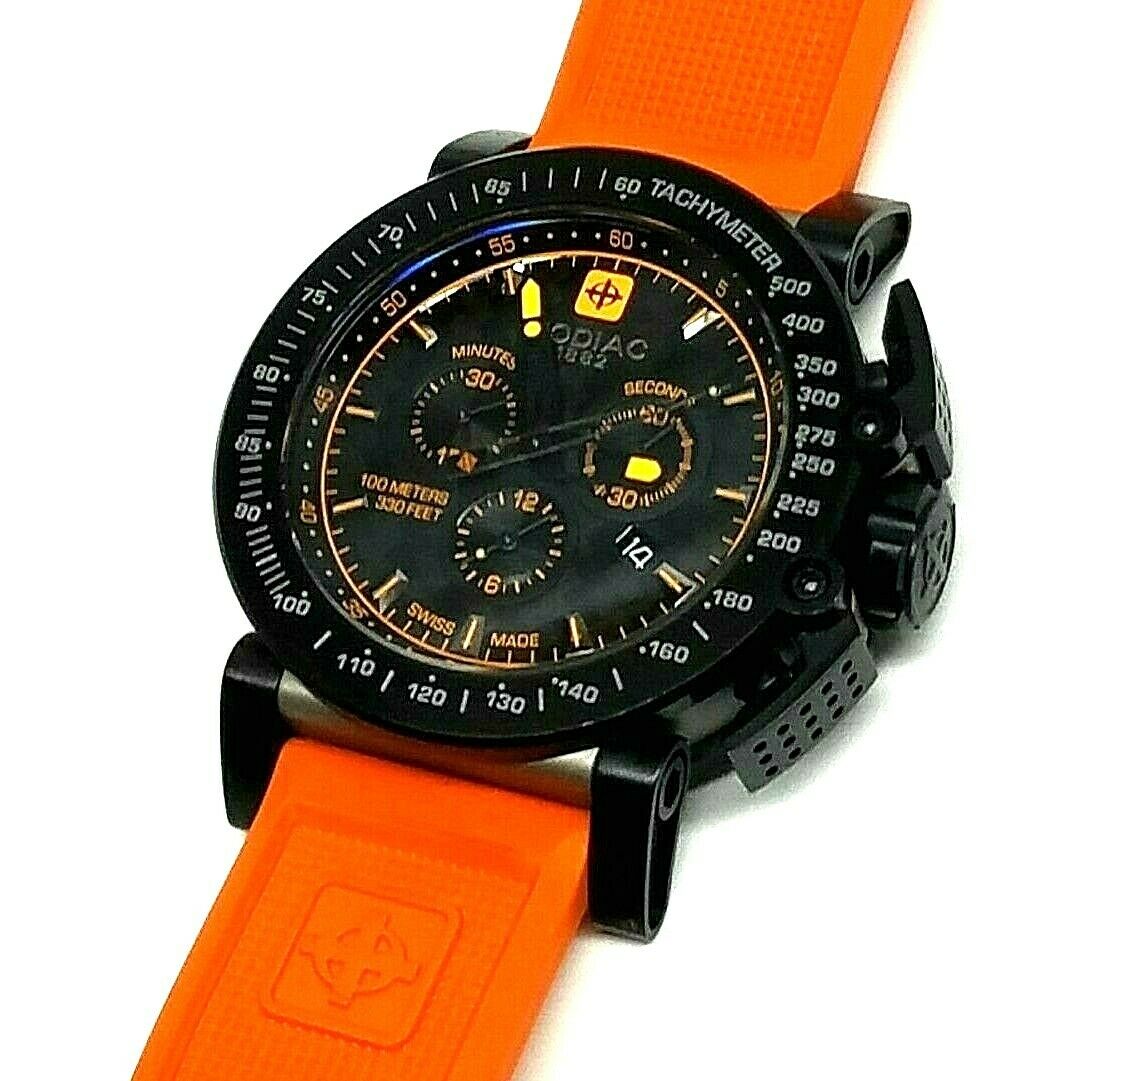 Zodiac Racer ZMX 02 ZO8535 Swiss dive Watch ONLY 250 MADE